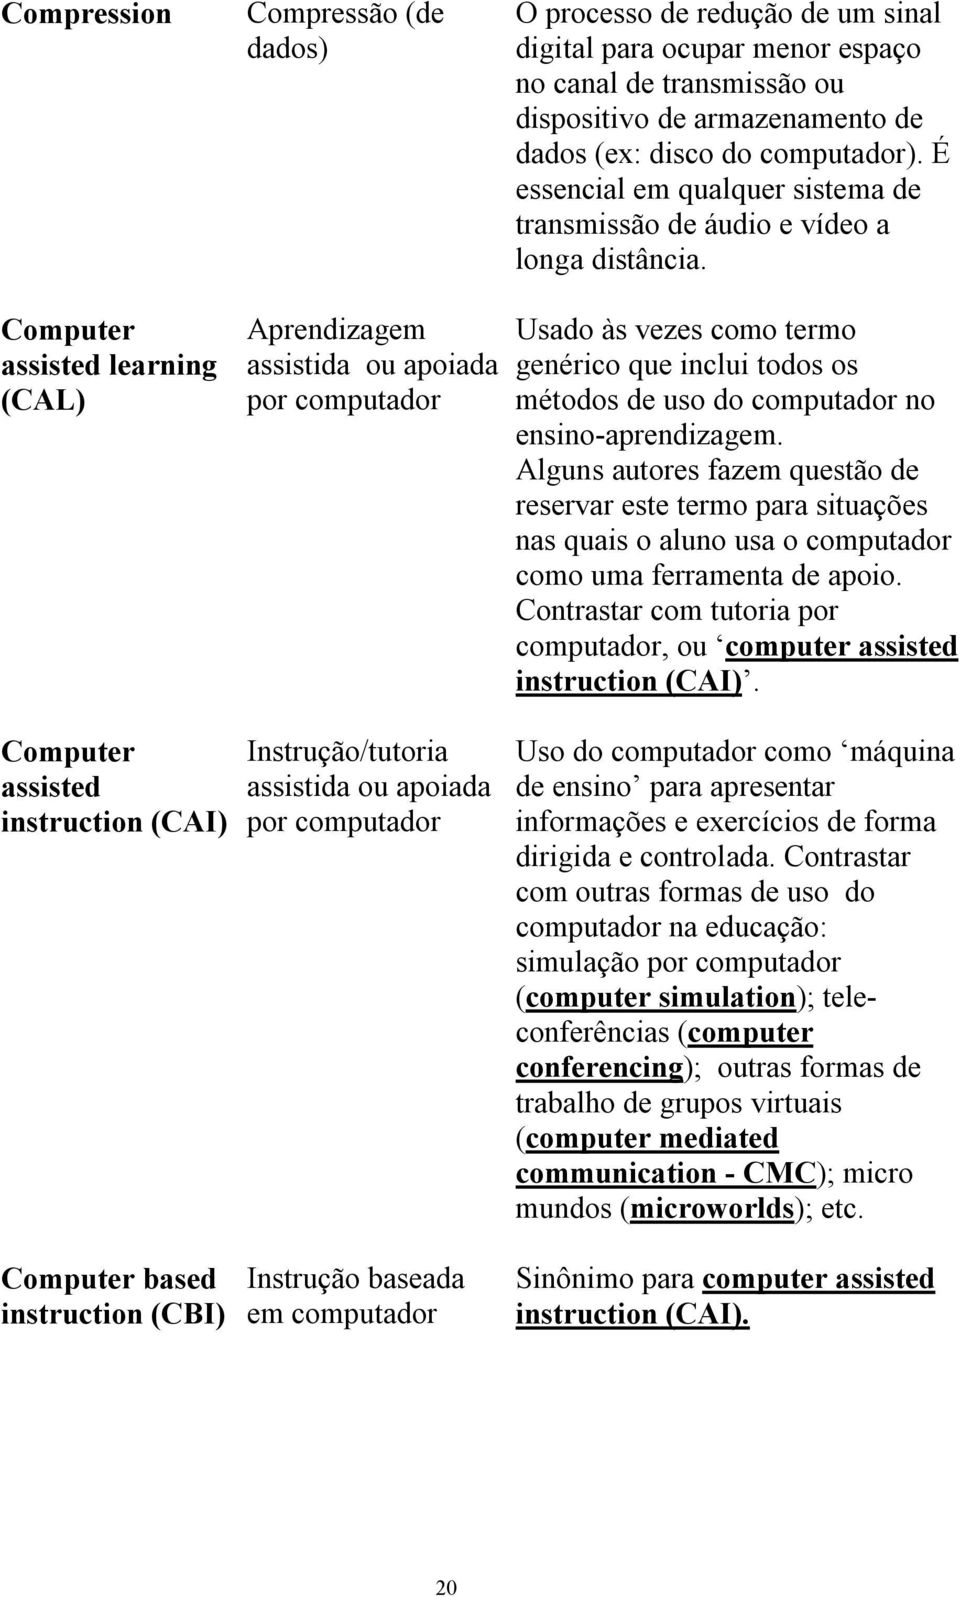 Computer assisted learning (CAL) Aprendizagem assistida ou apoiada por computador Usado às vezes como termo genérico que inclui todos os métodos de uso do computador no ensino-aprendizagem.